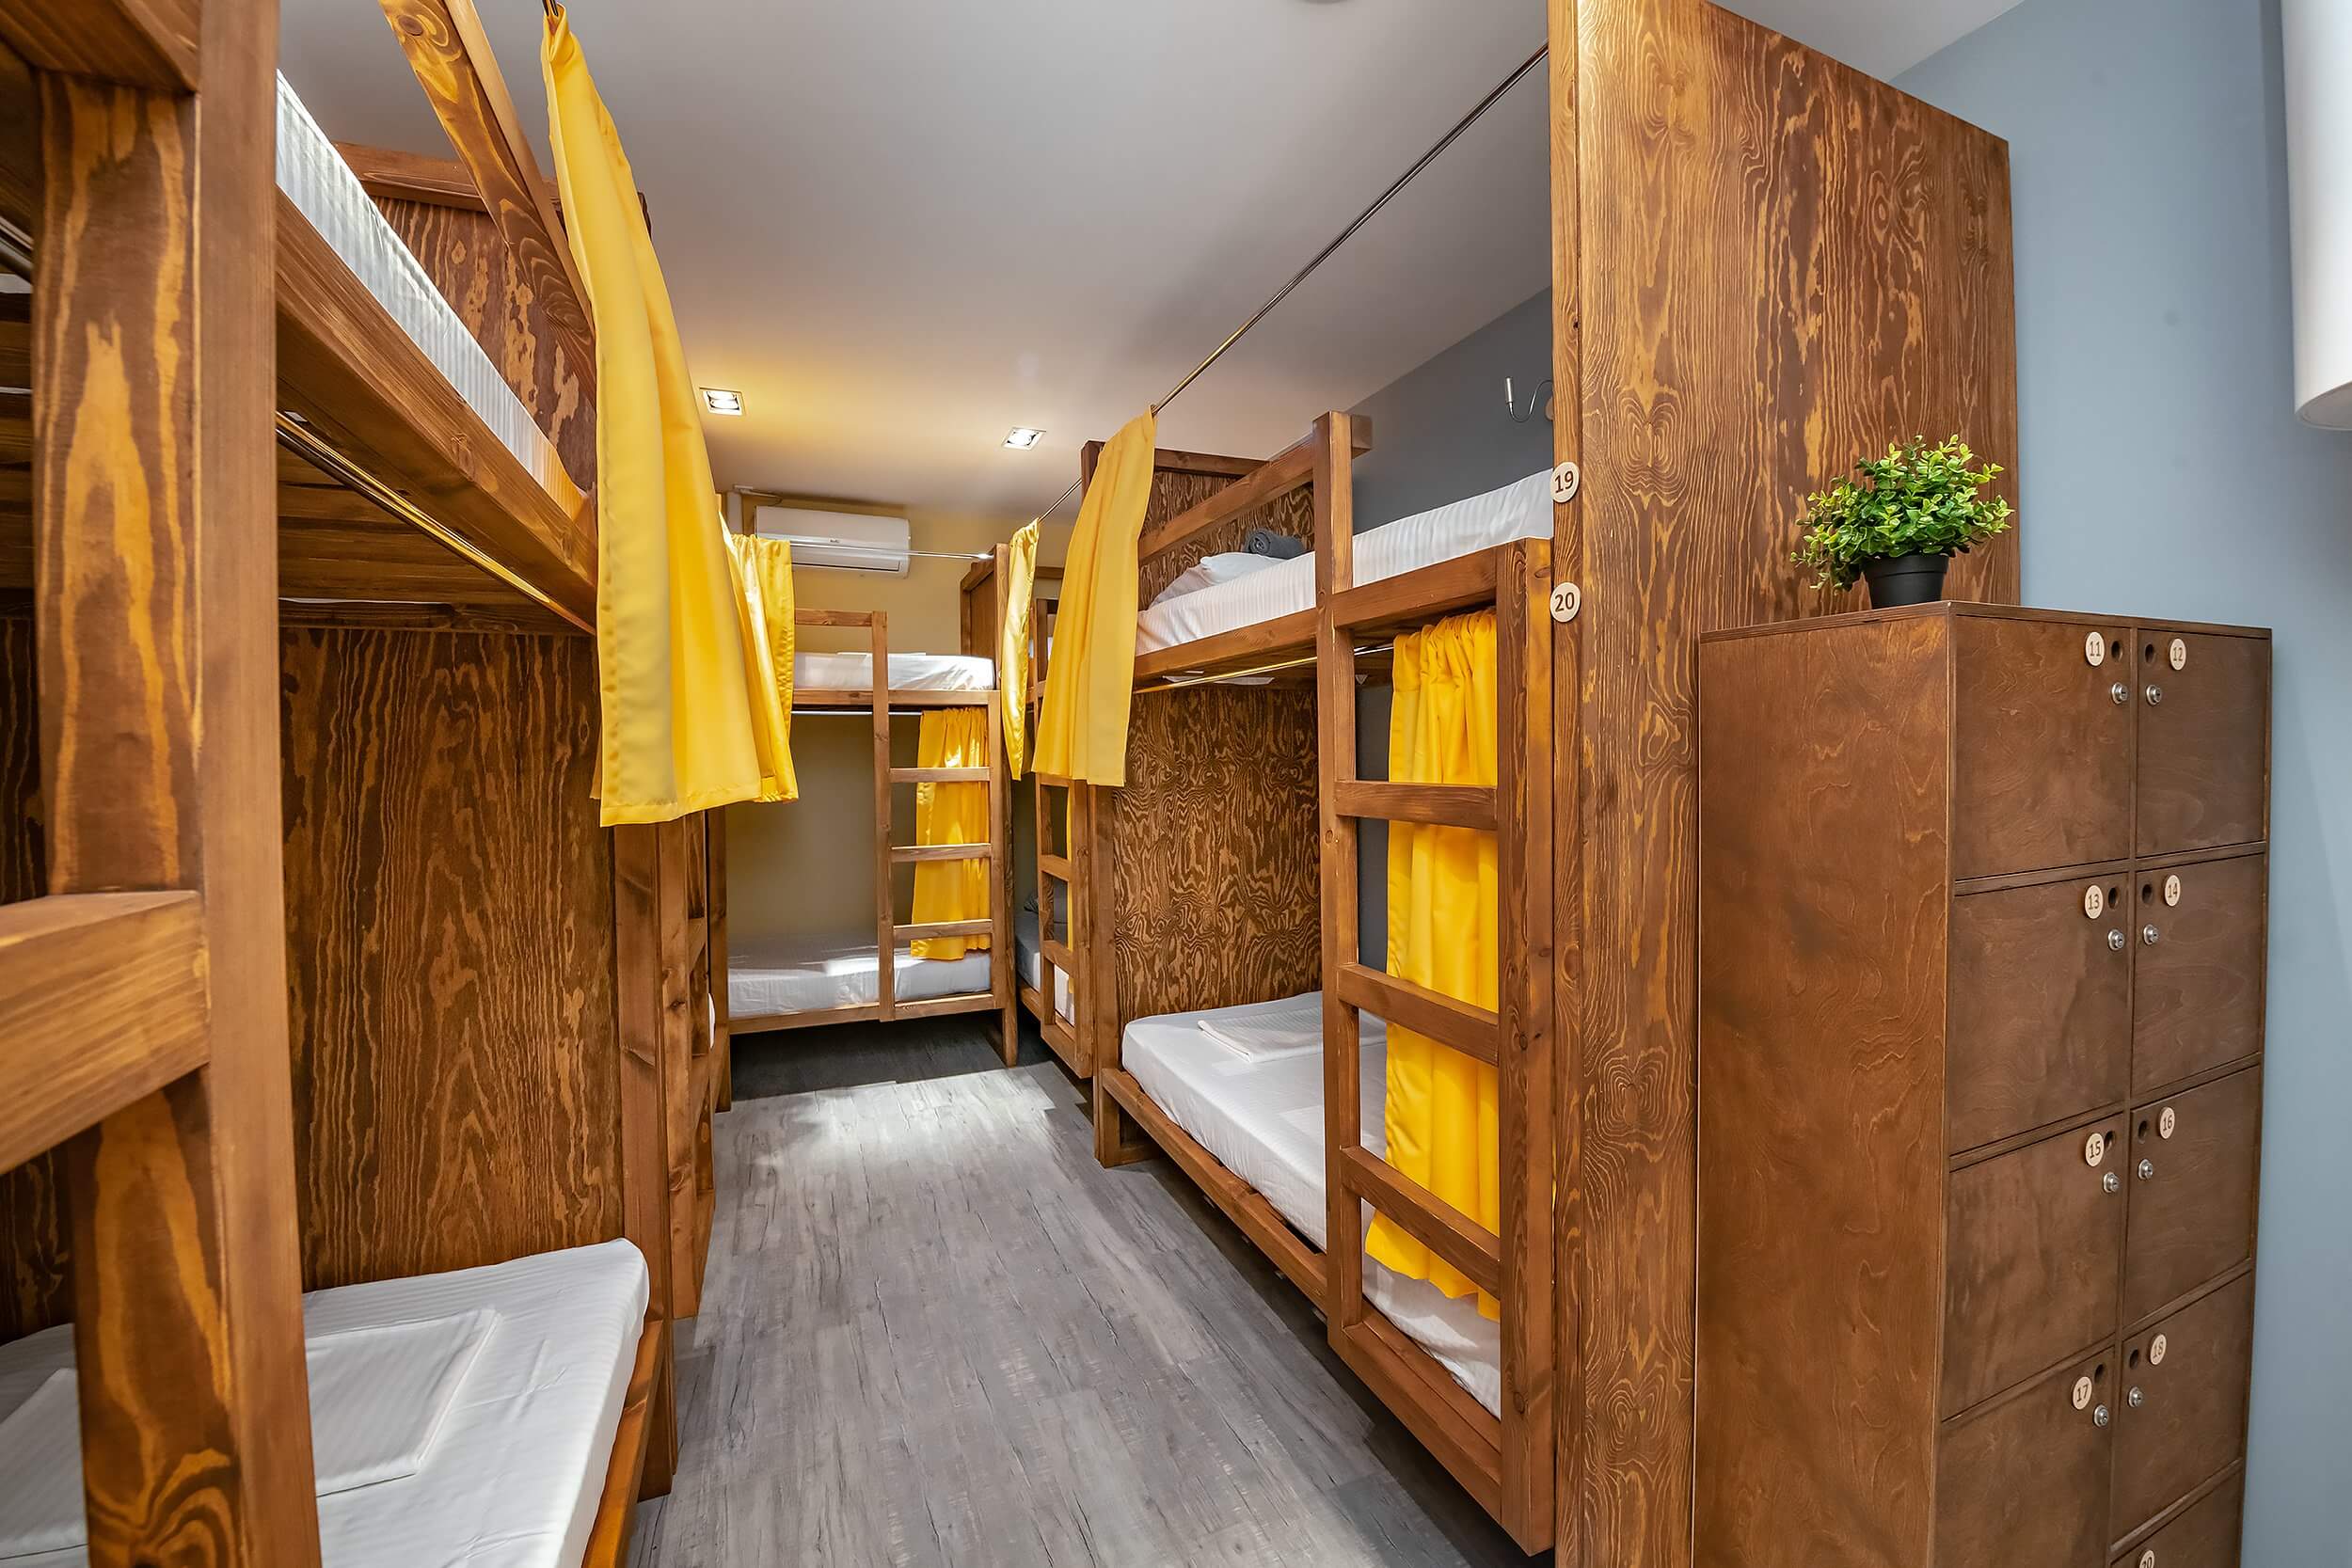 Красивые, деревянные кровати укомплектованы желтыми шторками.